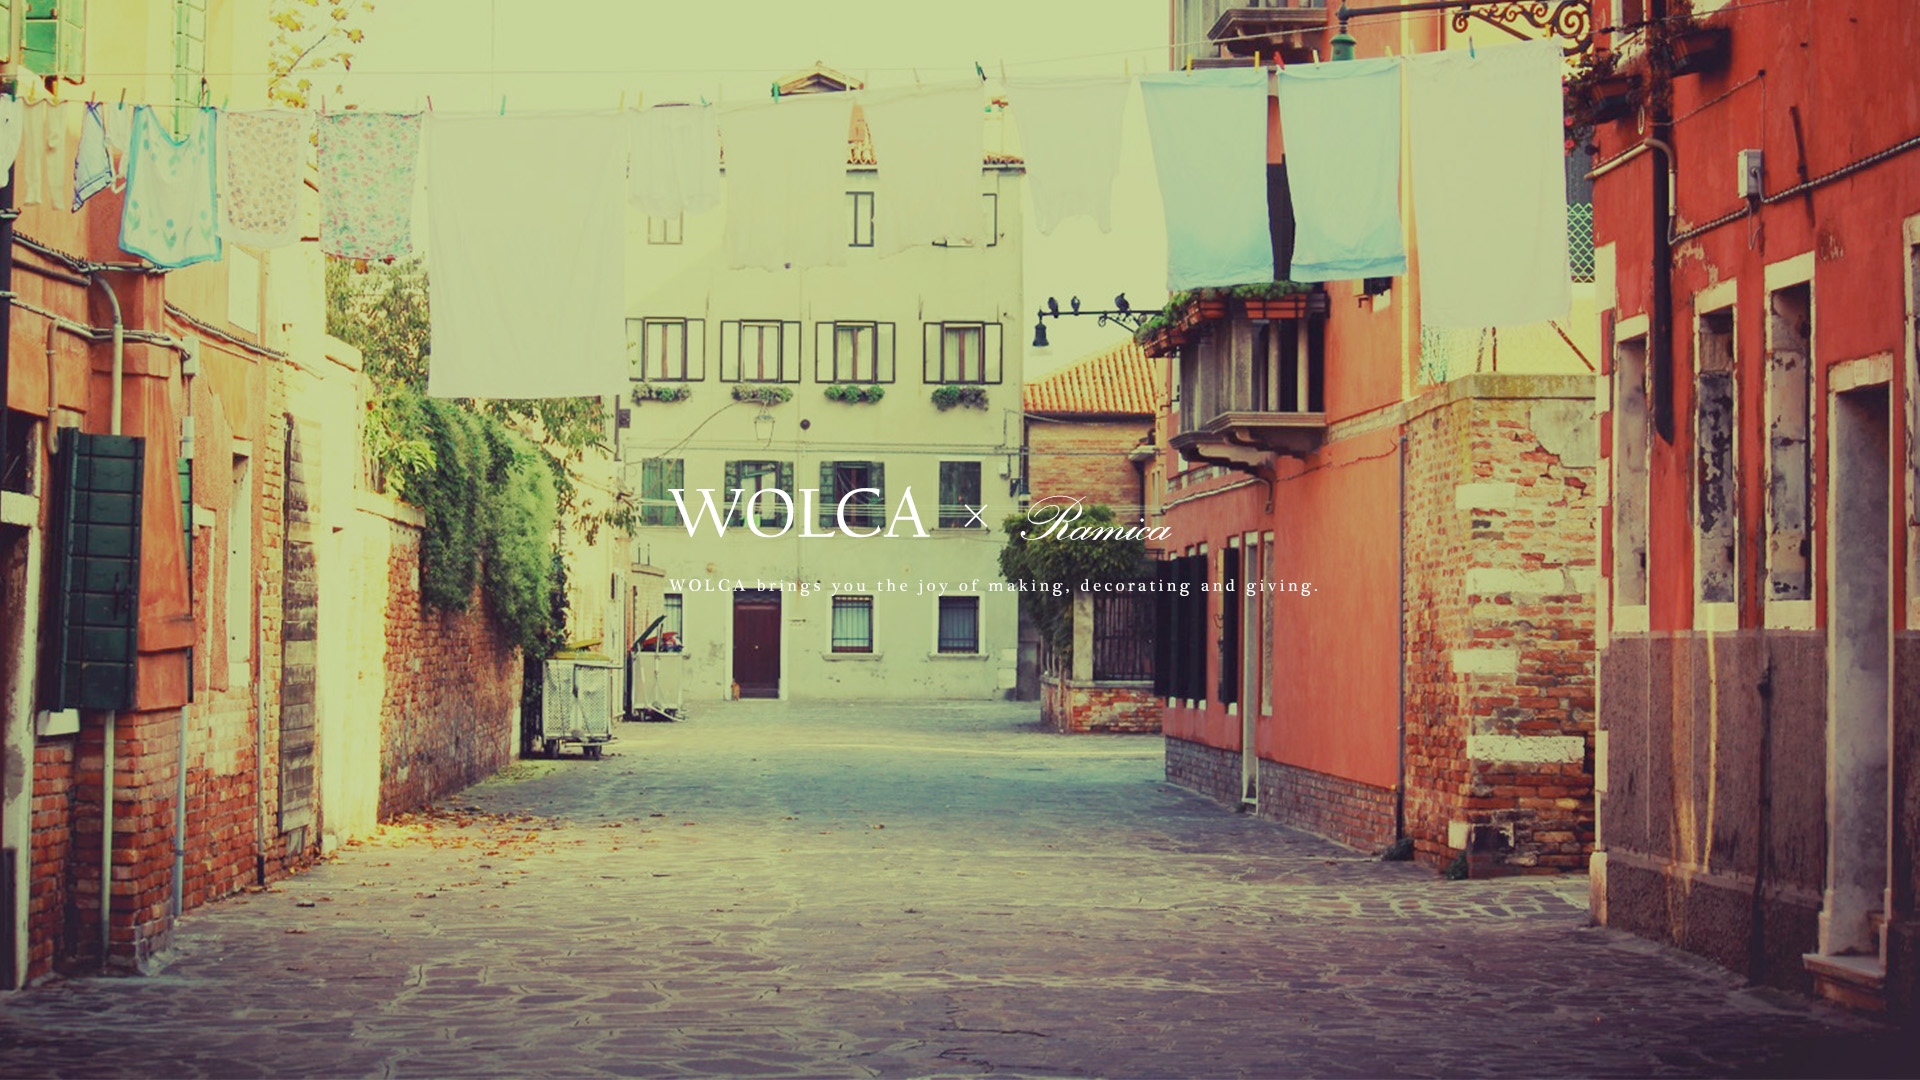 デスクトップpc用壁紙 外国の可愛い町並みの写真 Wolca